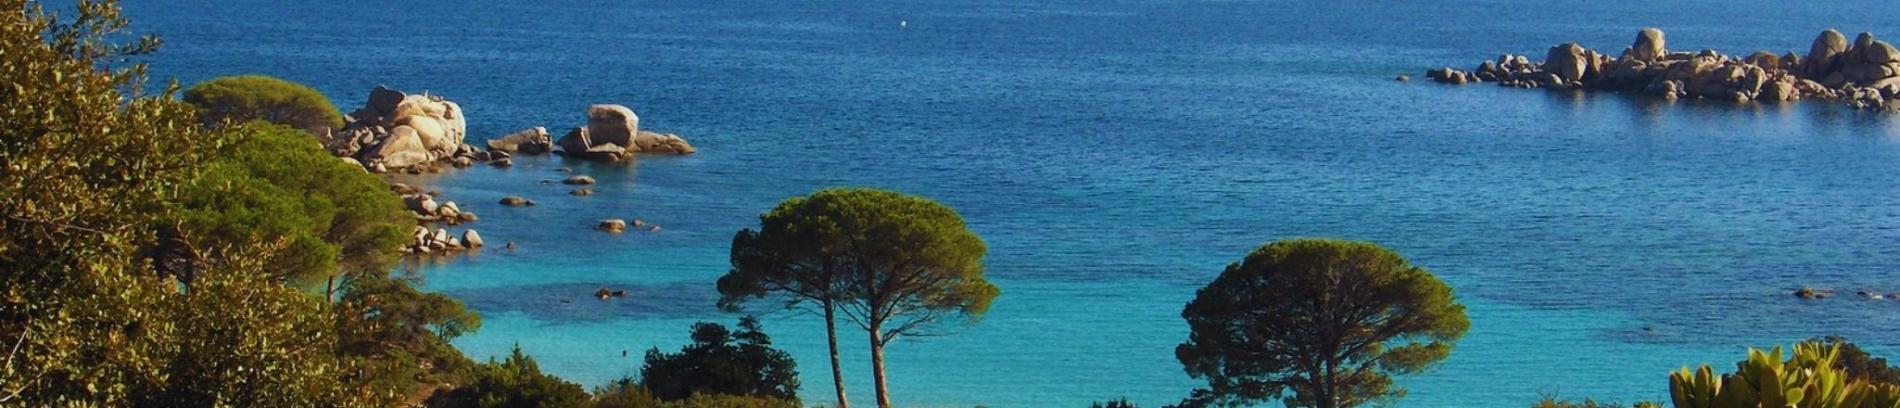 Slide Résidence Les Voiles Blanches à Solenzara - Plages Corse